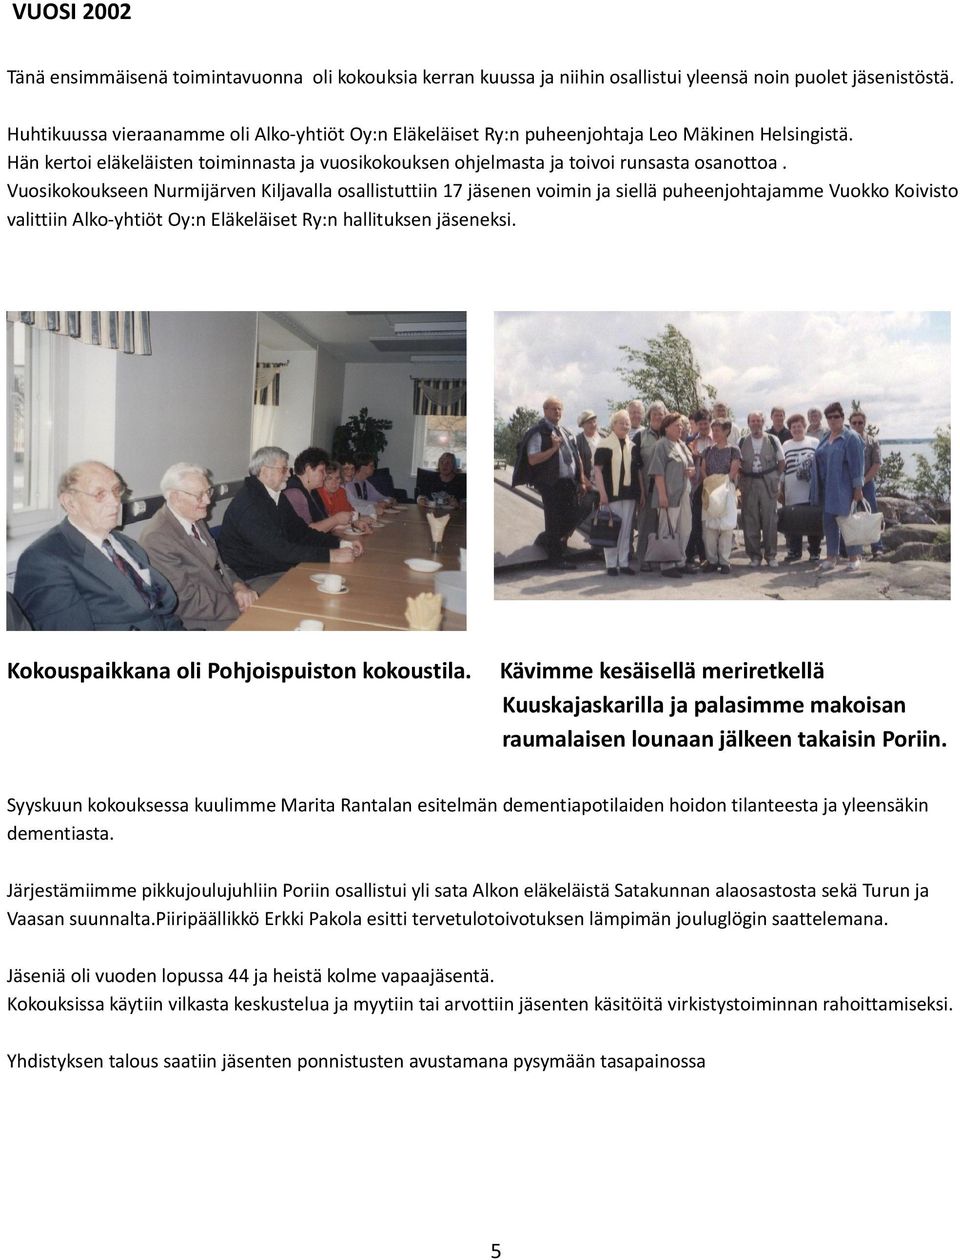 Vuosikokoukseen Nurmijärven Kiljavalla osallistuttiin 17 en voimin ja siellä puheenjohtajamme Vuokko Koivisto valittiin Alko-yhtiöt Oy:n Eläkeläiset Ry:n hallituksen eksi.